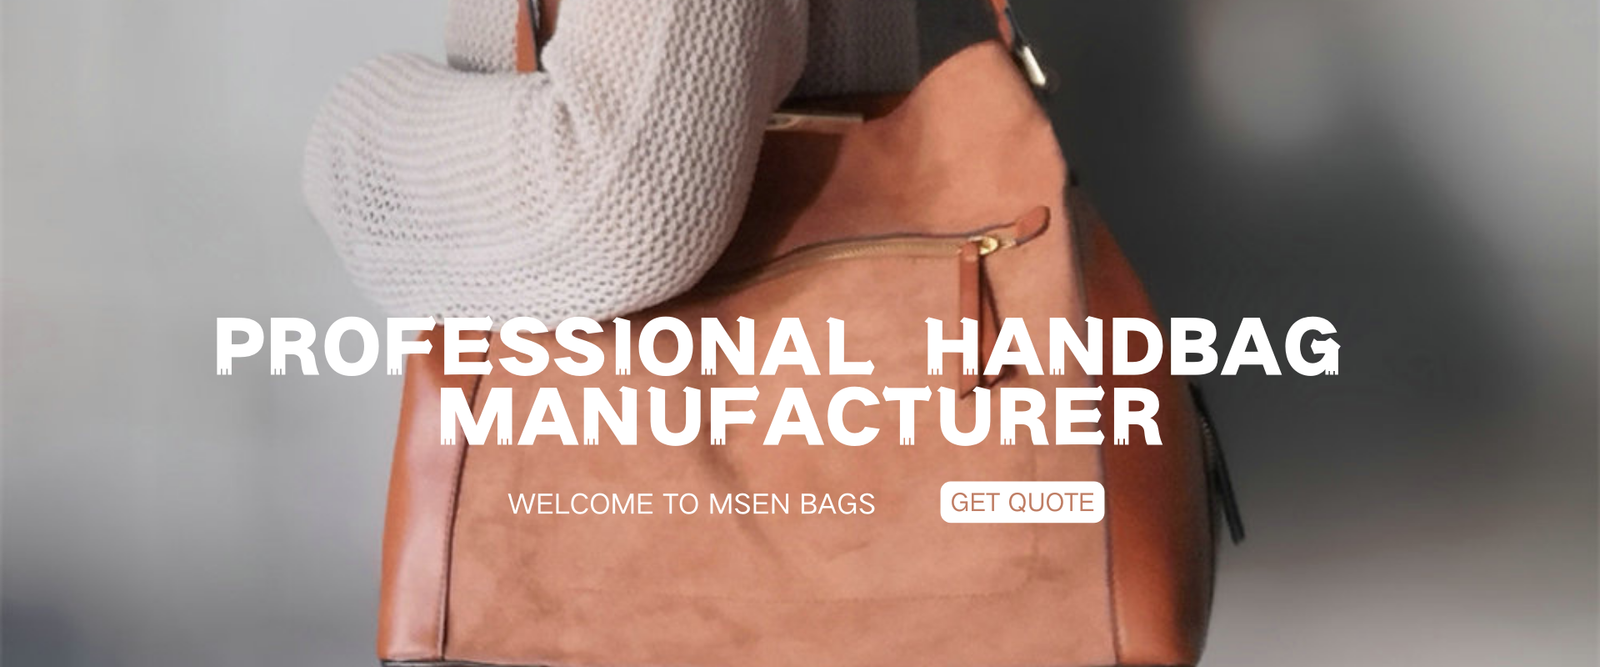 Professional Handbag Manufacturer